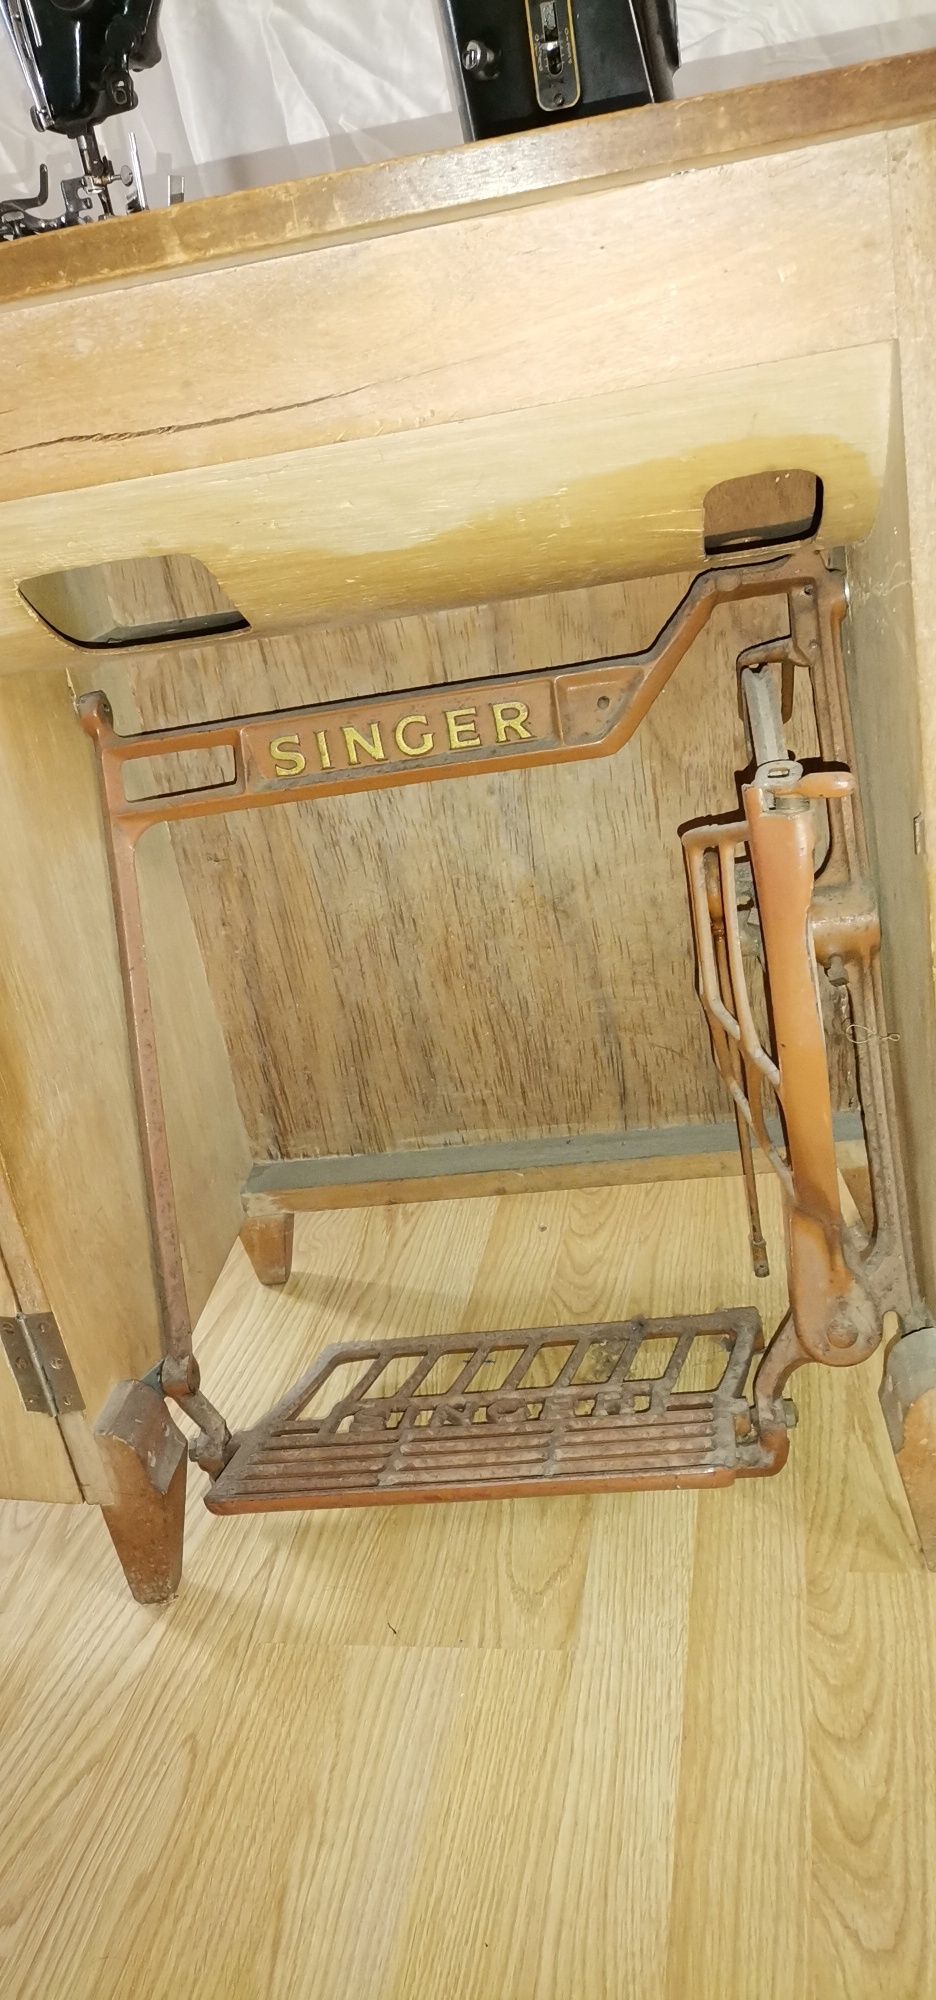 Maquina costura singer pedal